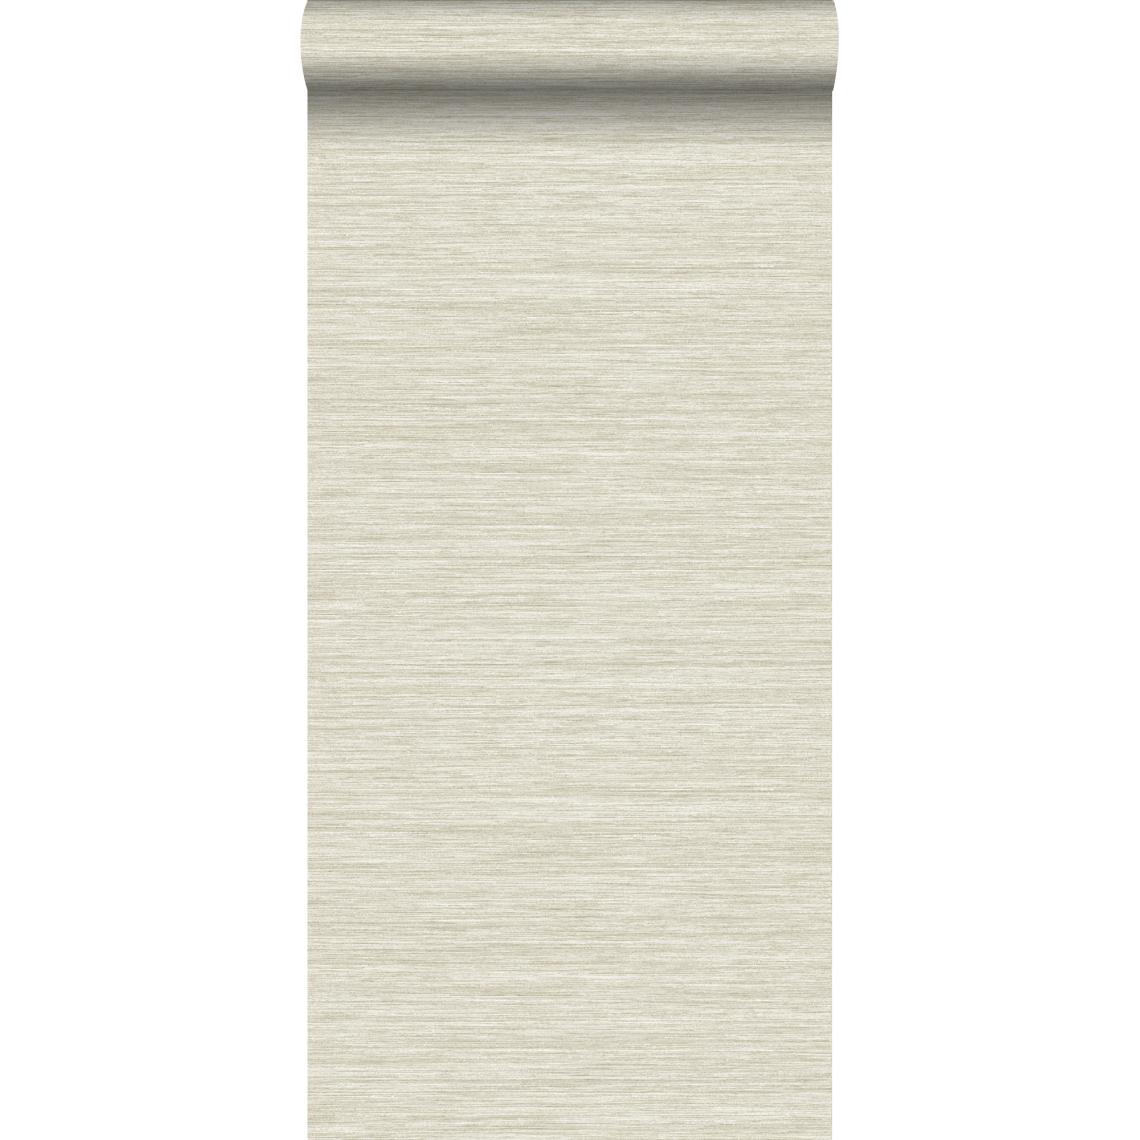 Origin - Origin papier peint structure tissée gris clair - 347651 - 0.53 x 10.05 m - Papier peint